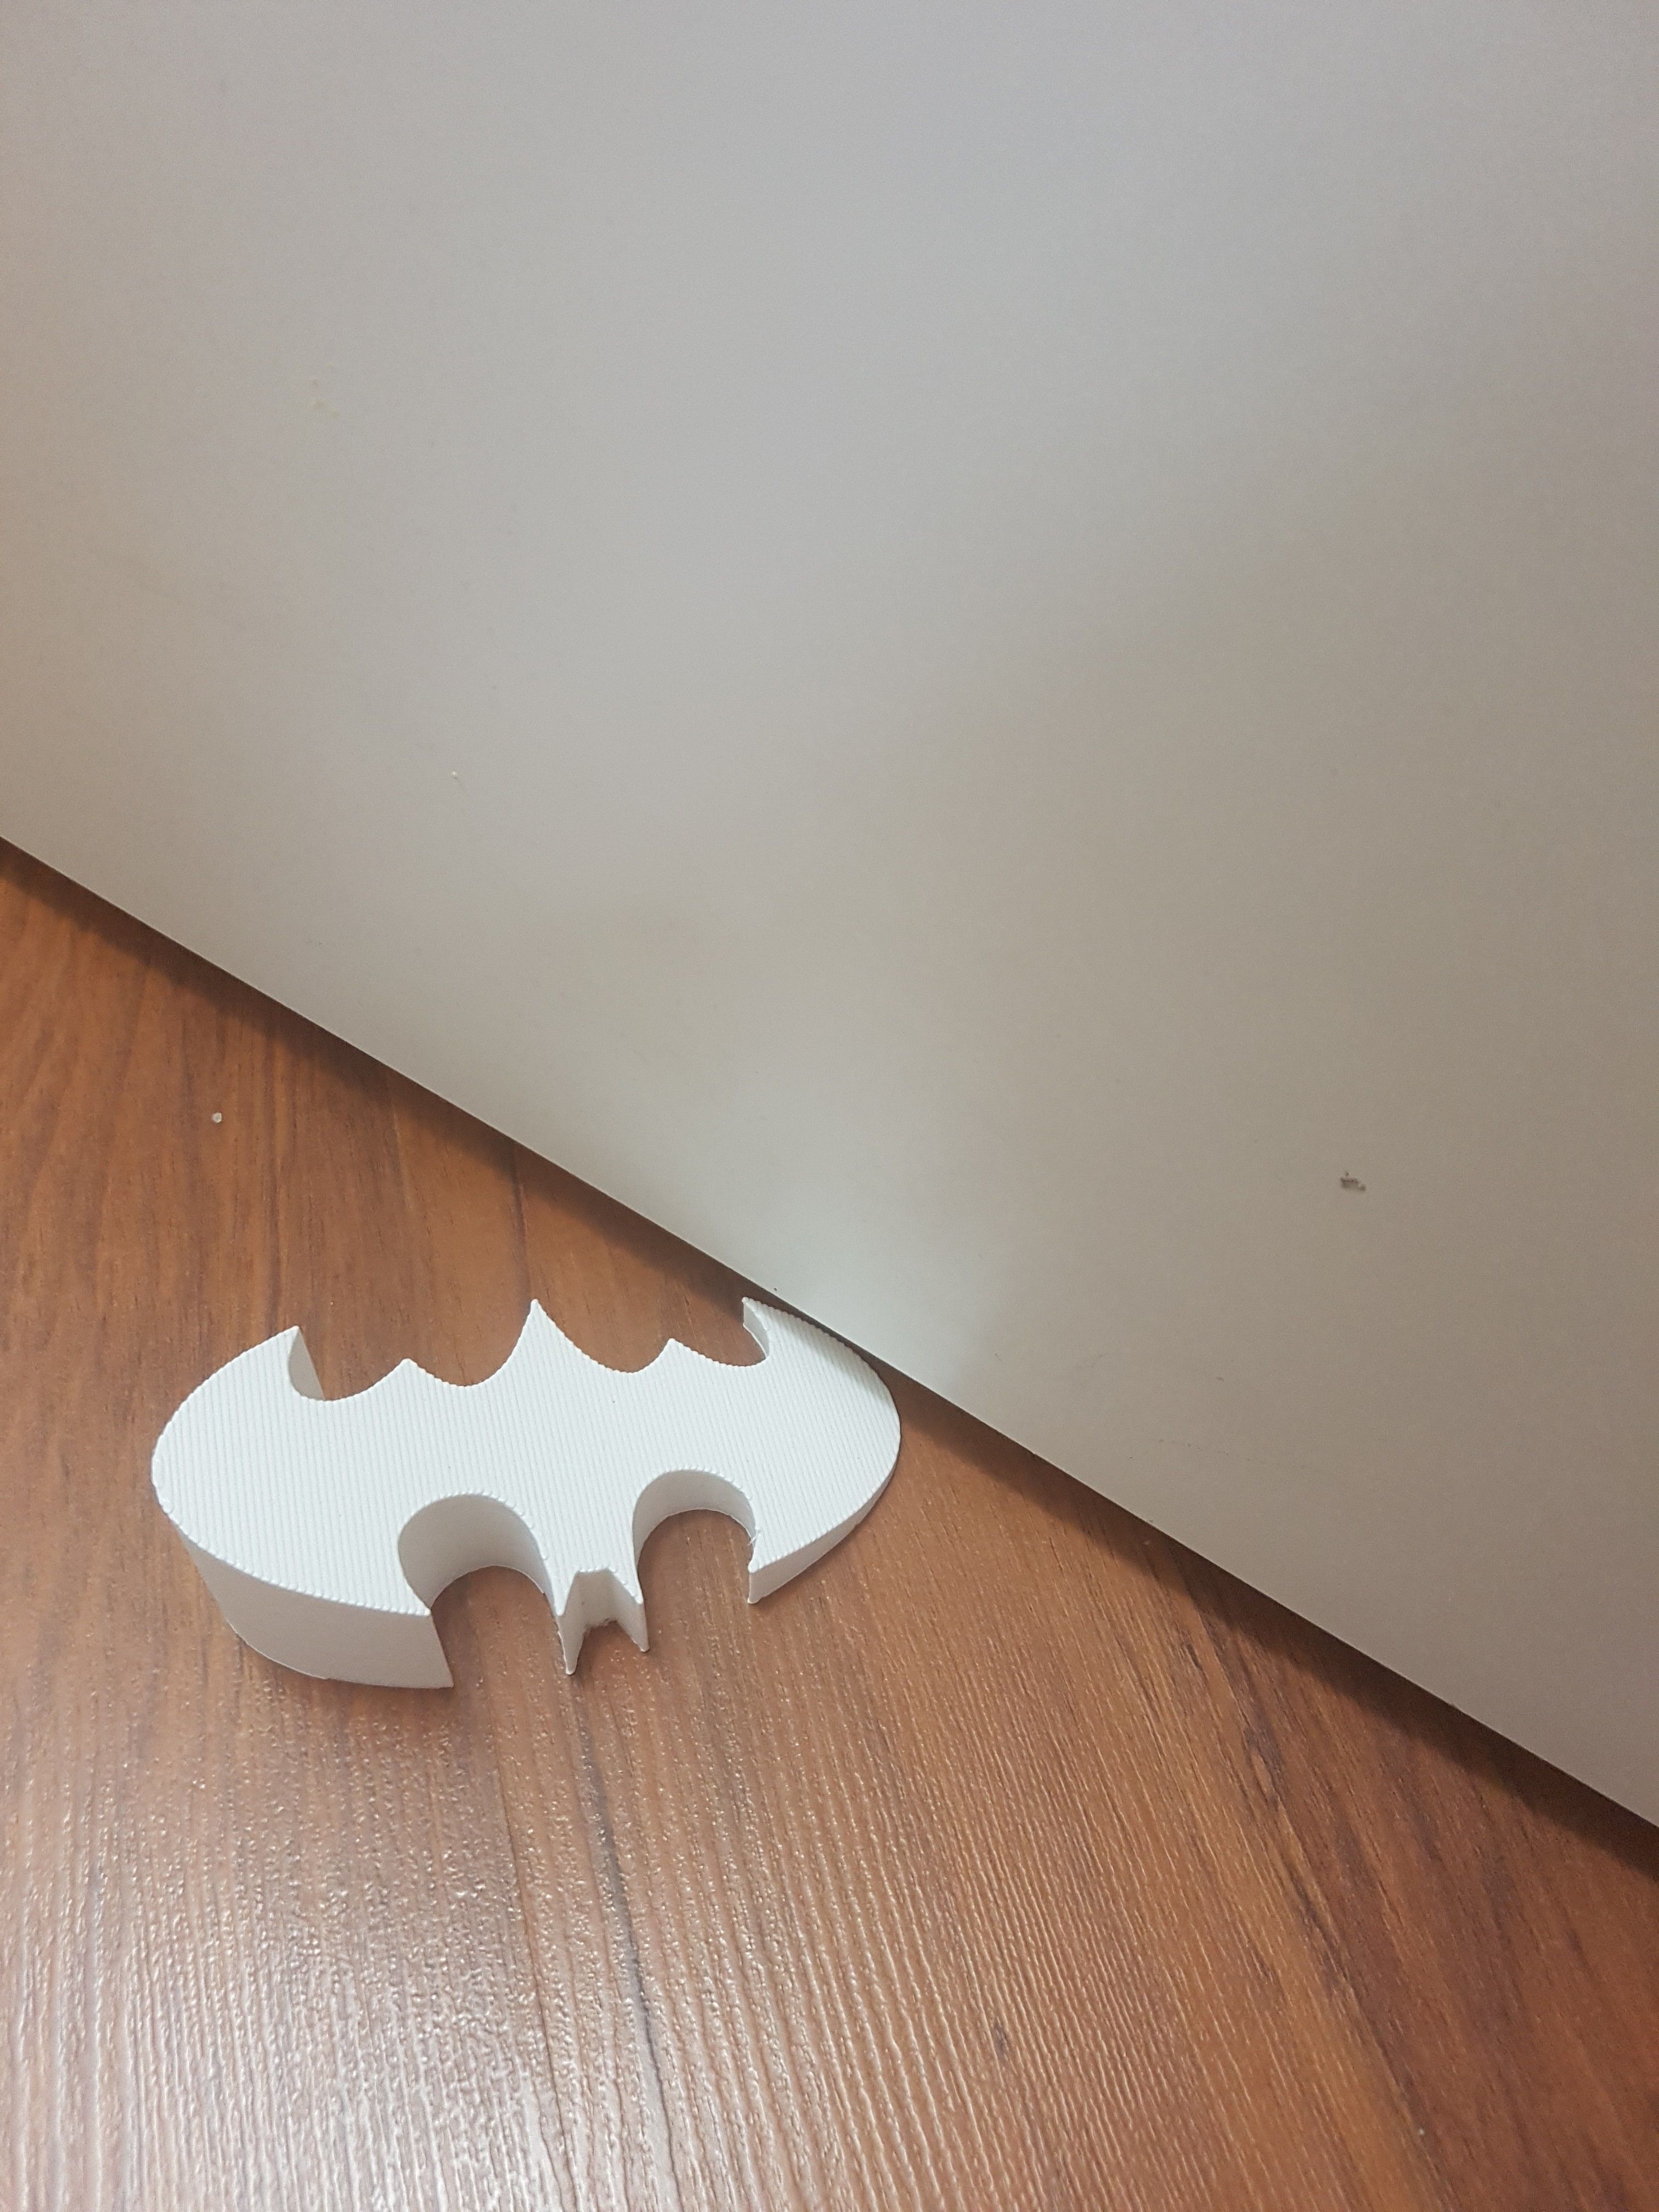 20180609_173721.jpg Файл STL BATMAN door stopper・3D-печать дизайна для загрузки, JOYs-3D